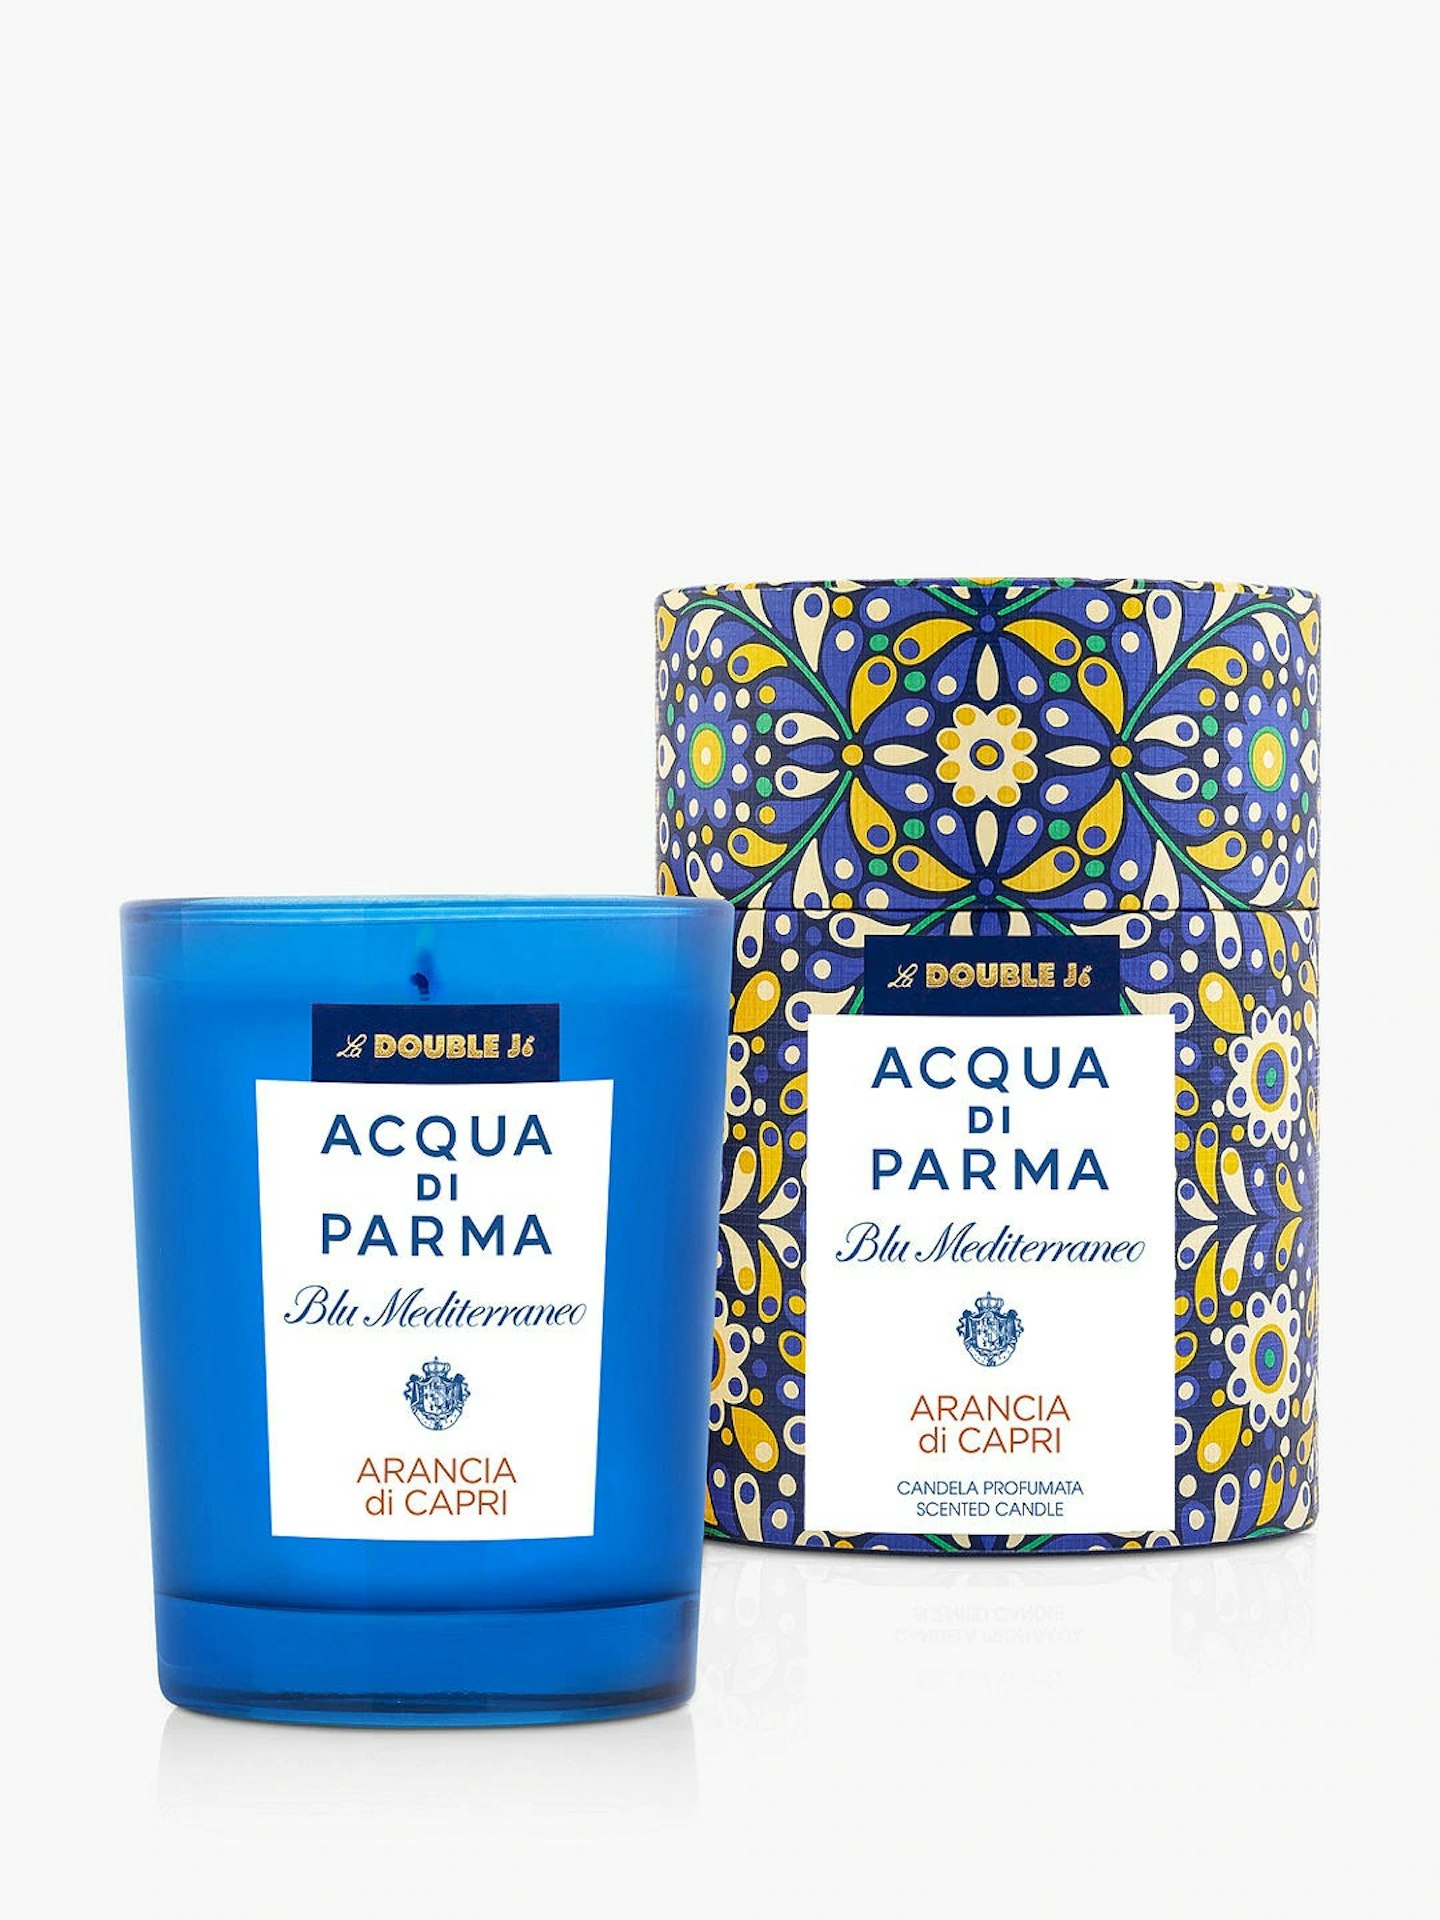 Acqua di Parma Blu Mediterraneo La Double J Arancia di Capri Scented Candle, £60